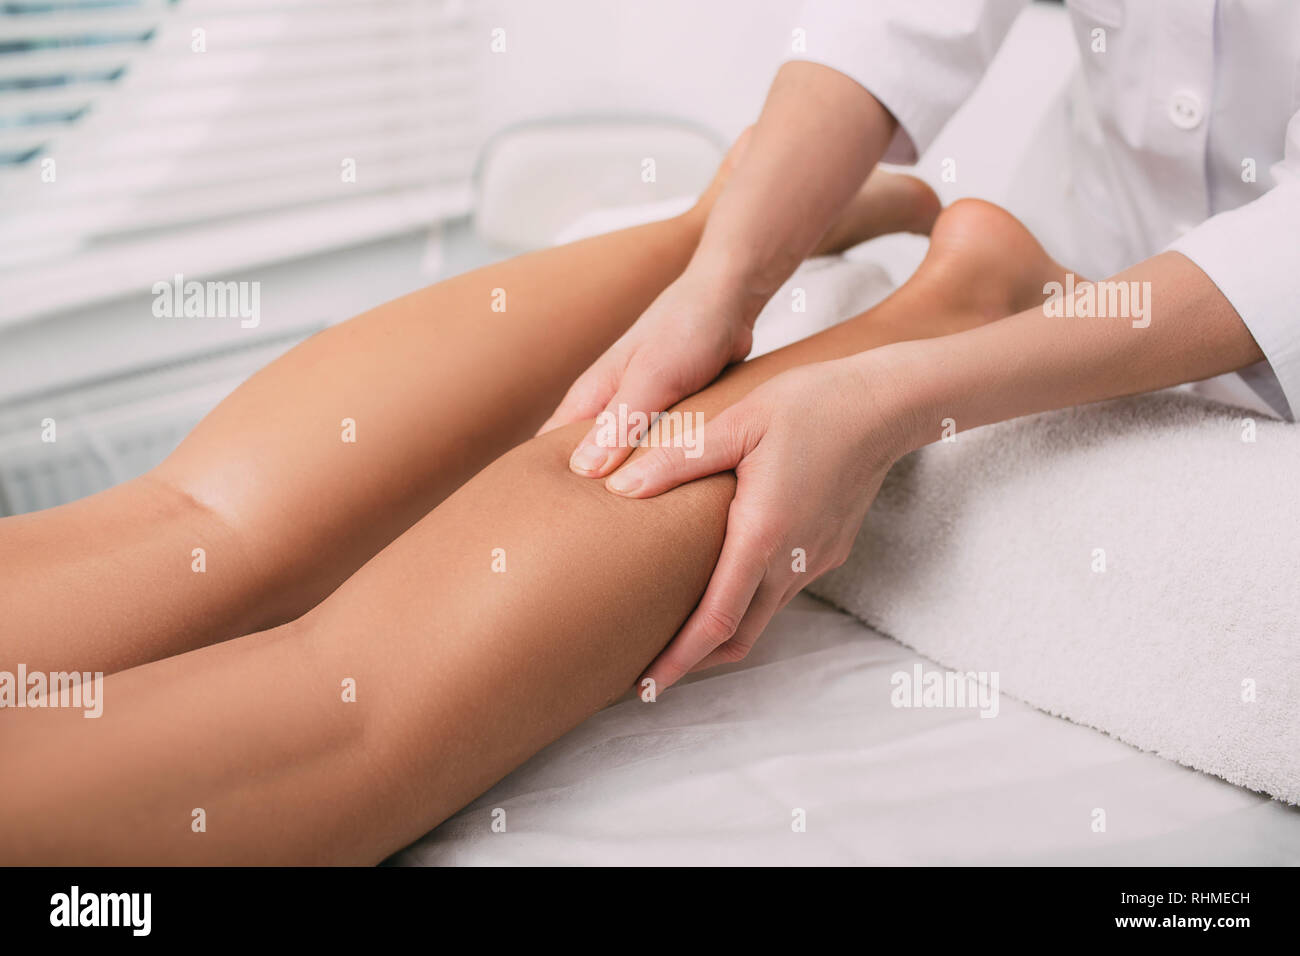 massage therapist makes relaxing leg massage, close-up Stock Photo